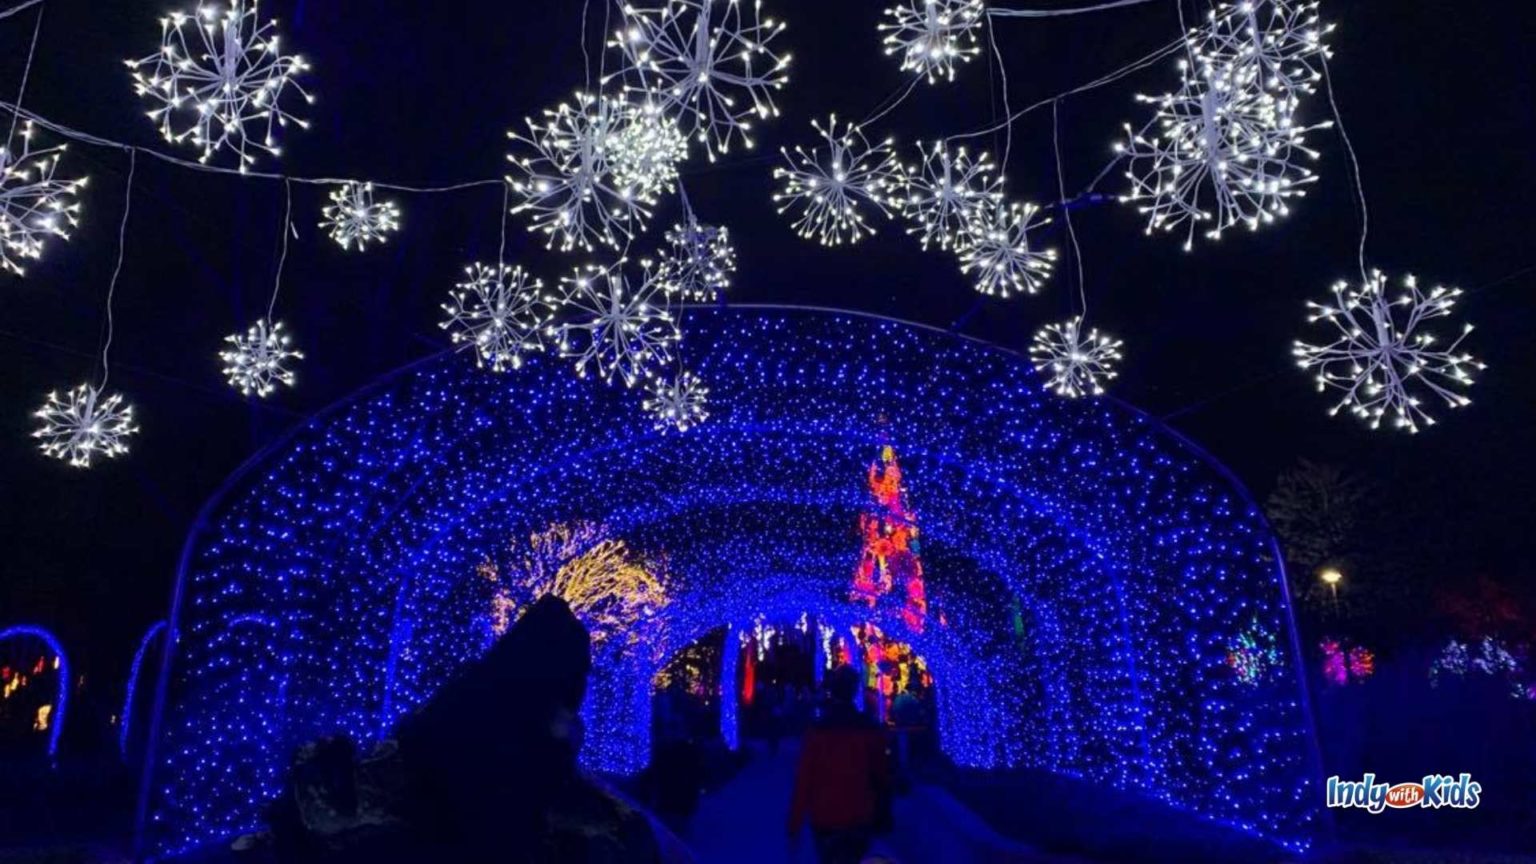 Winterlights at Newfields Walk Through a Light Filled Winter Wonderland